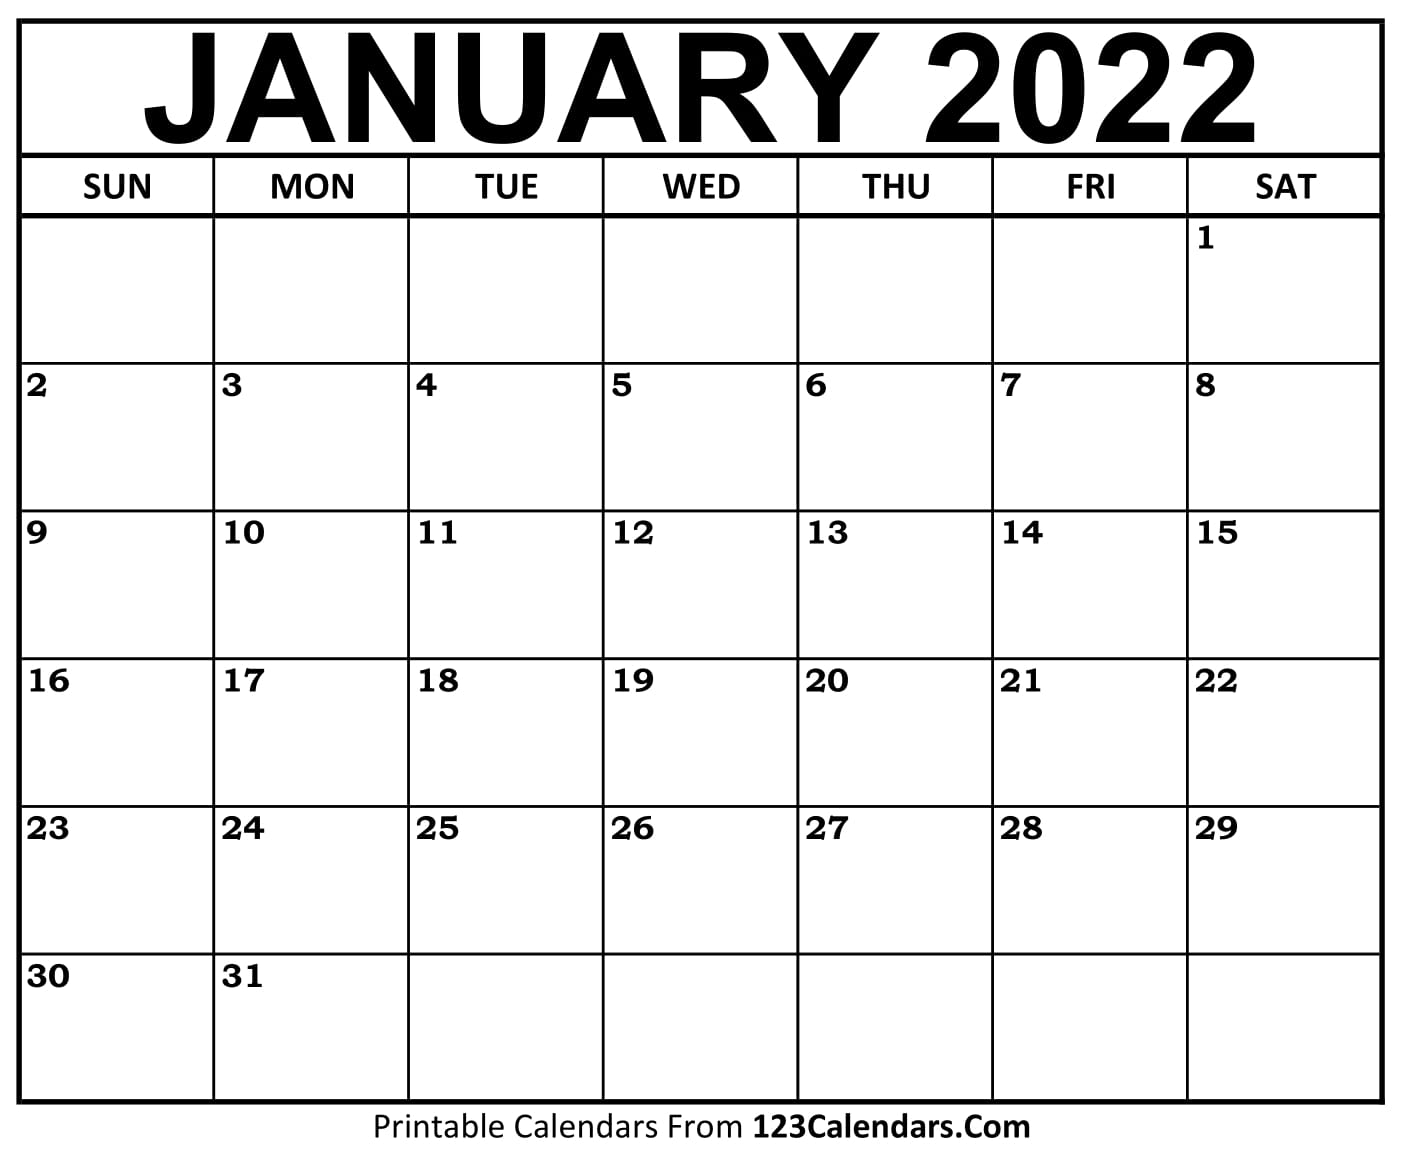 Month Of January 2022 Calendar Printable January 2022 Calendar Templates - 123Calendars.com